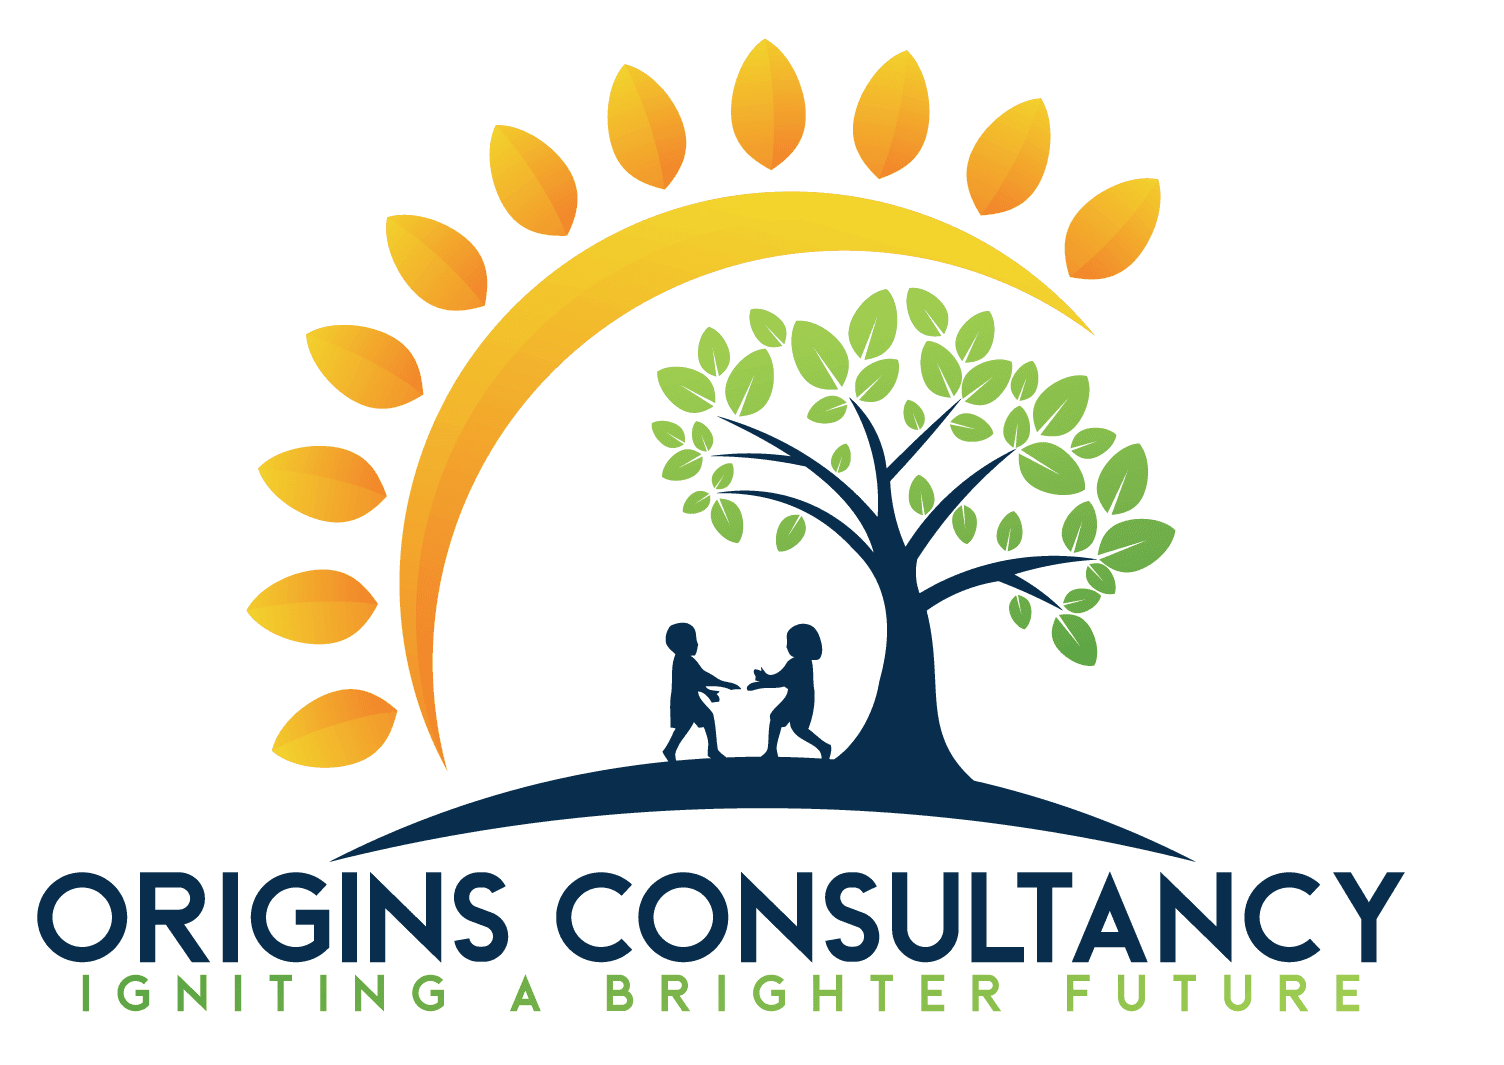 Origins Consultancy